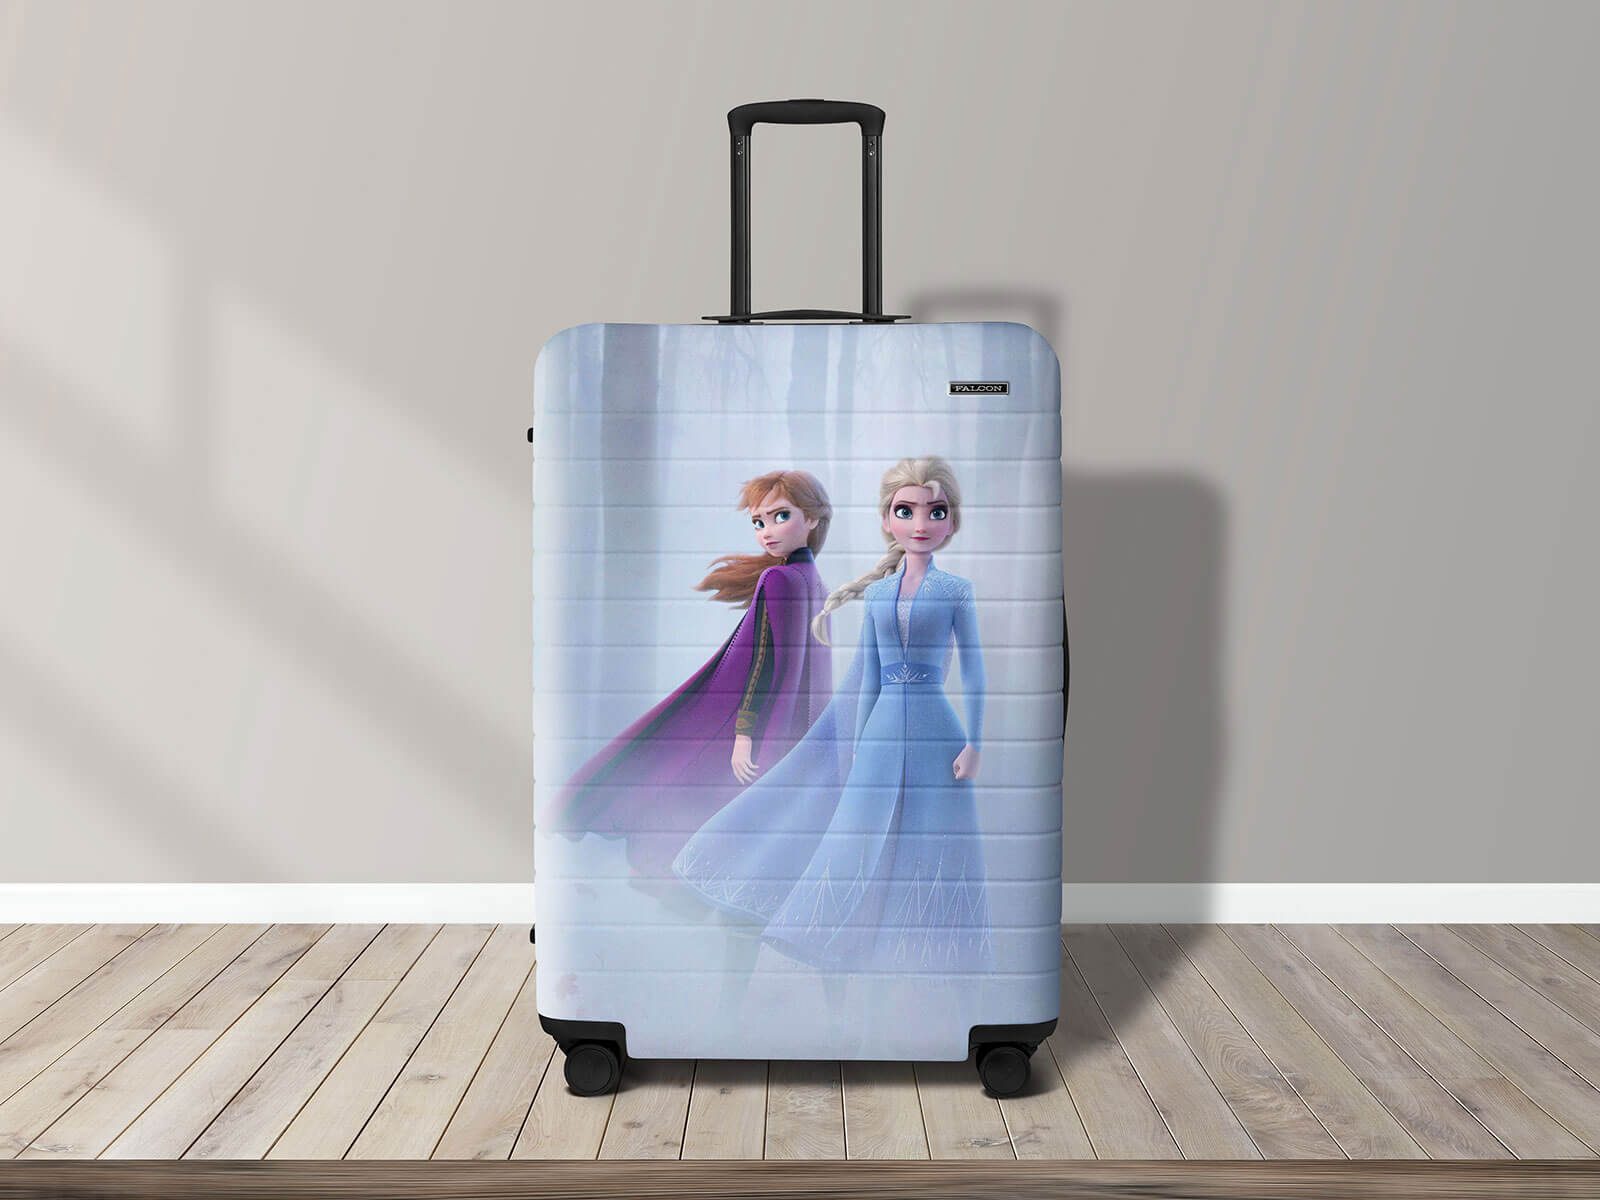 Free-Travel-Luggage-Suitcase-Mockup-PSD-File-2 (3)